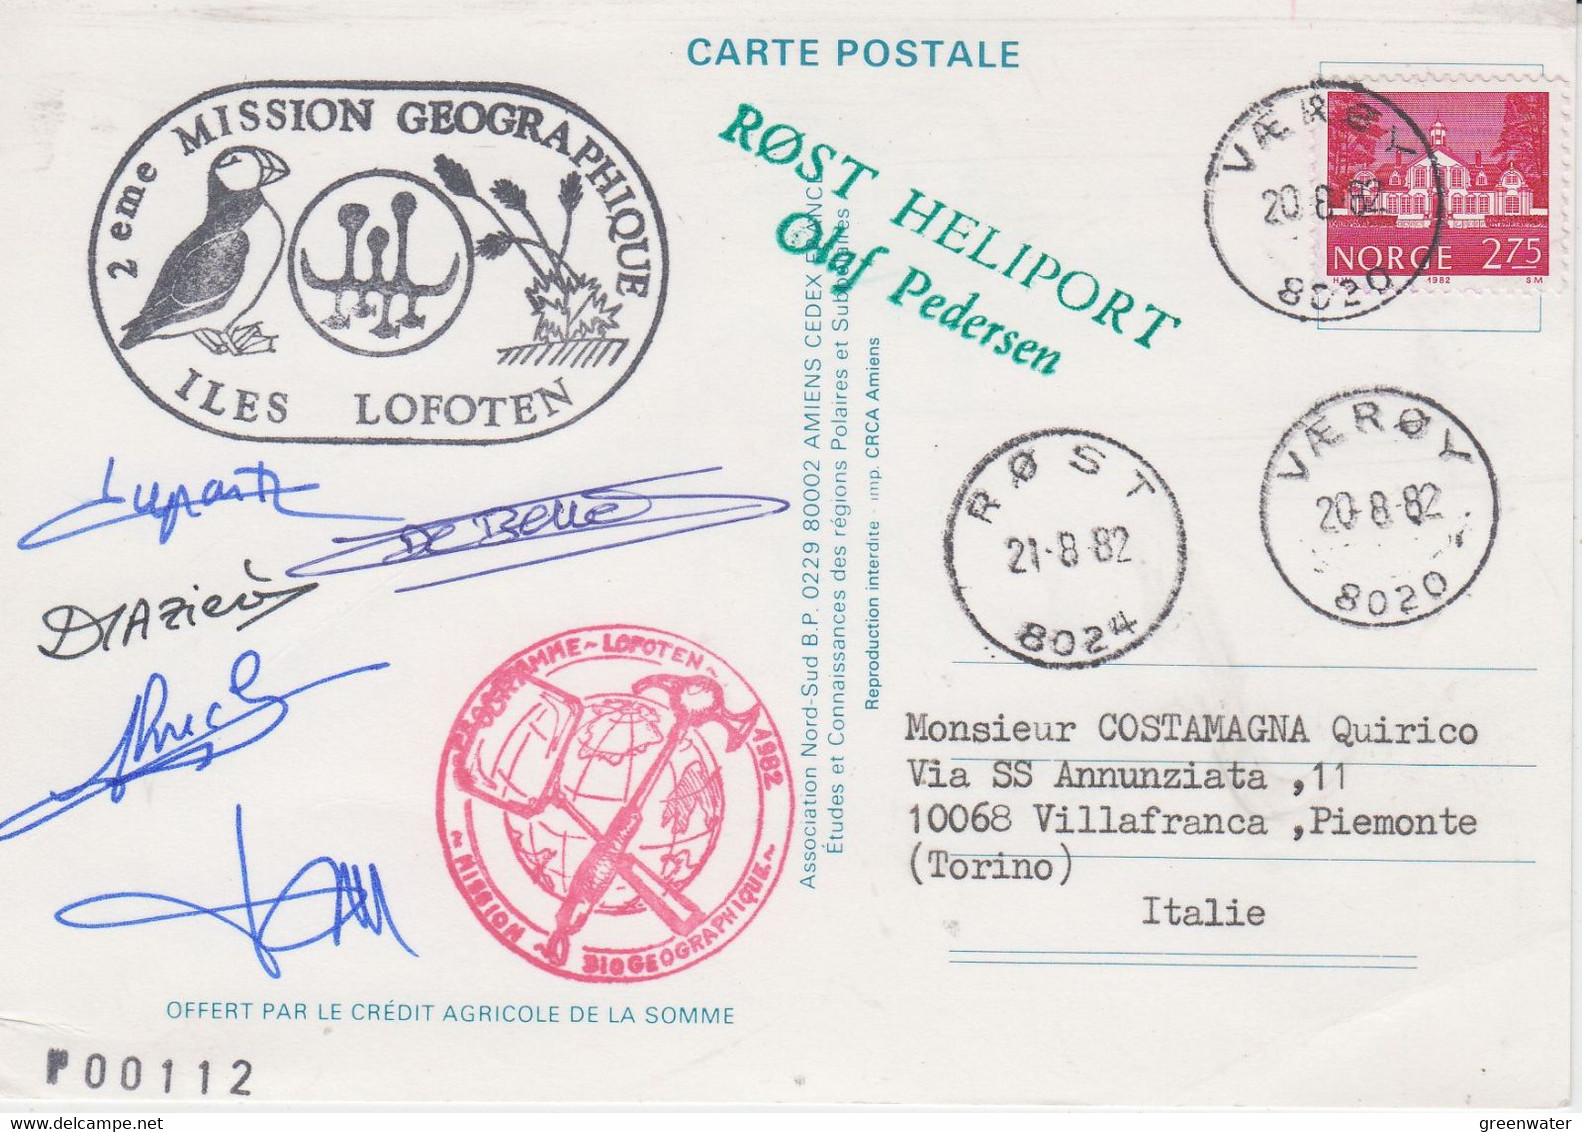 Norway 1982 Postcard Emile Victor  2eme Mission Georgraphique Ca Rost Heliport  5 Signatuires Ca Varoy 20-8-1982 (NW200) - Programas De Investigación